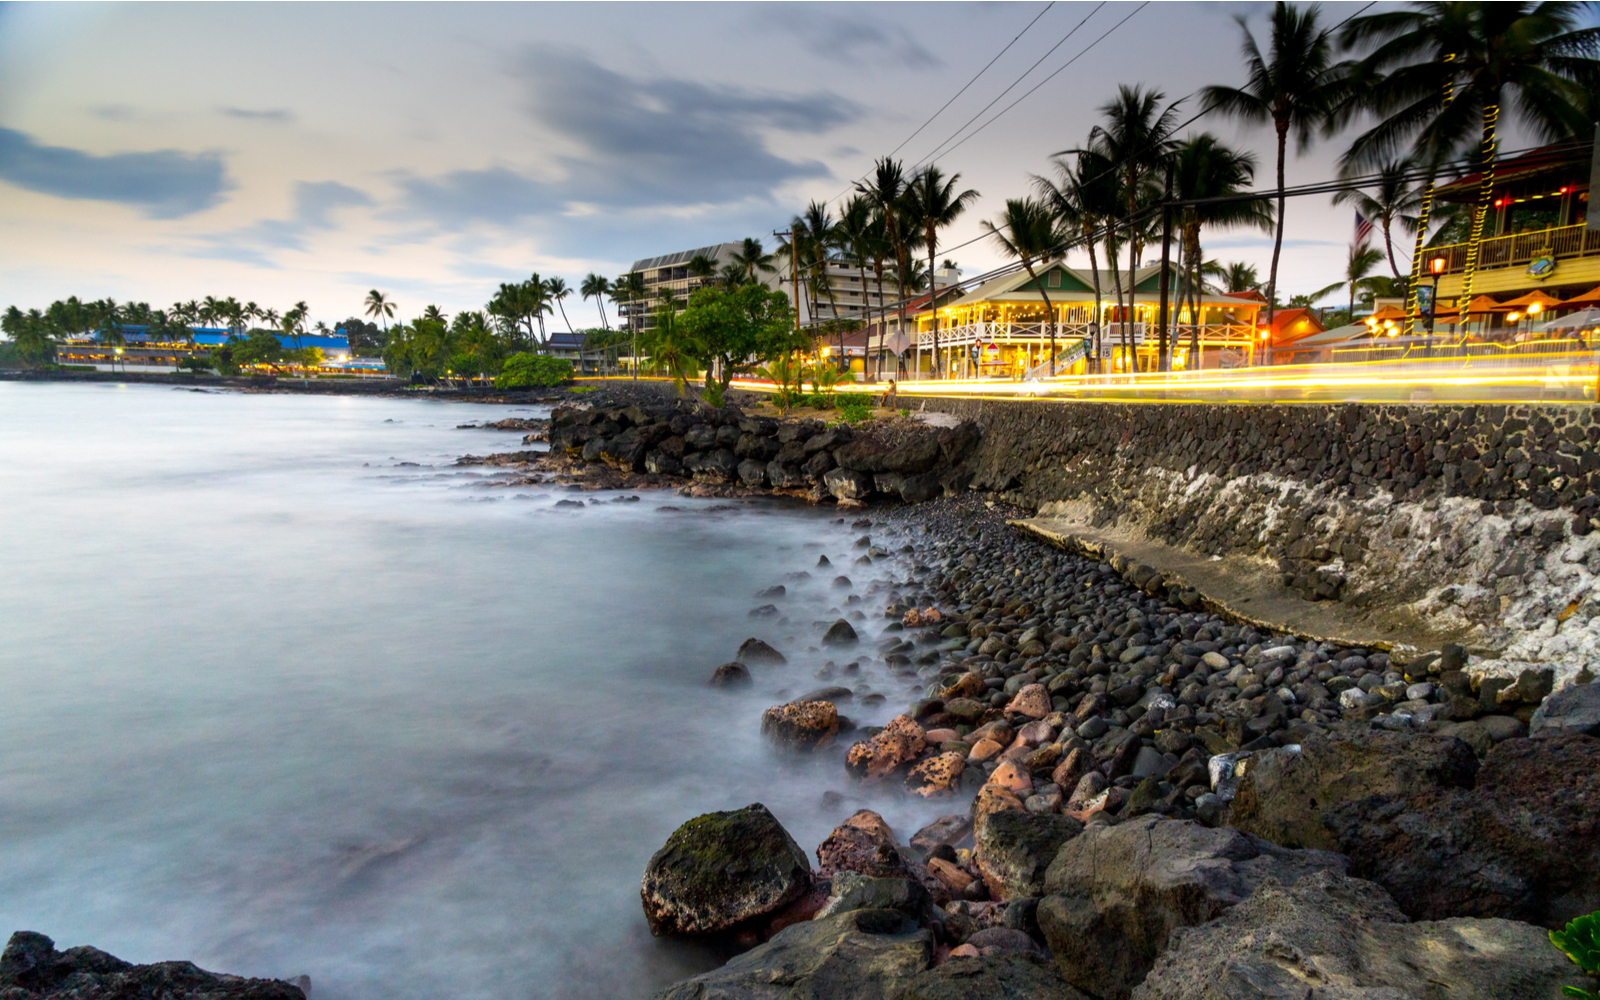 The 10 Best Hotels in Kona, Hawaii in 2022